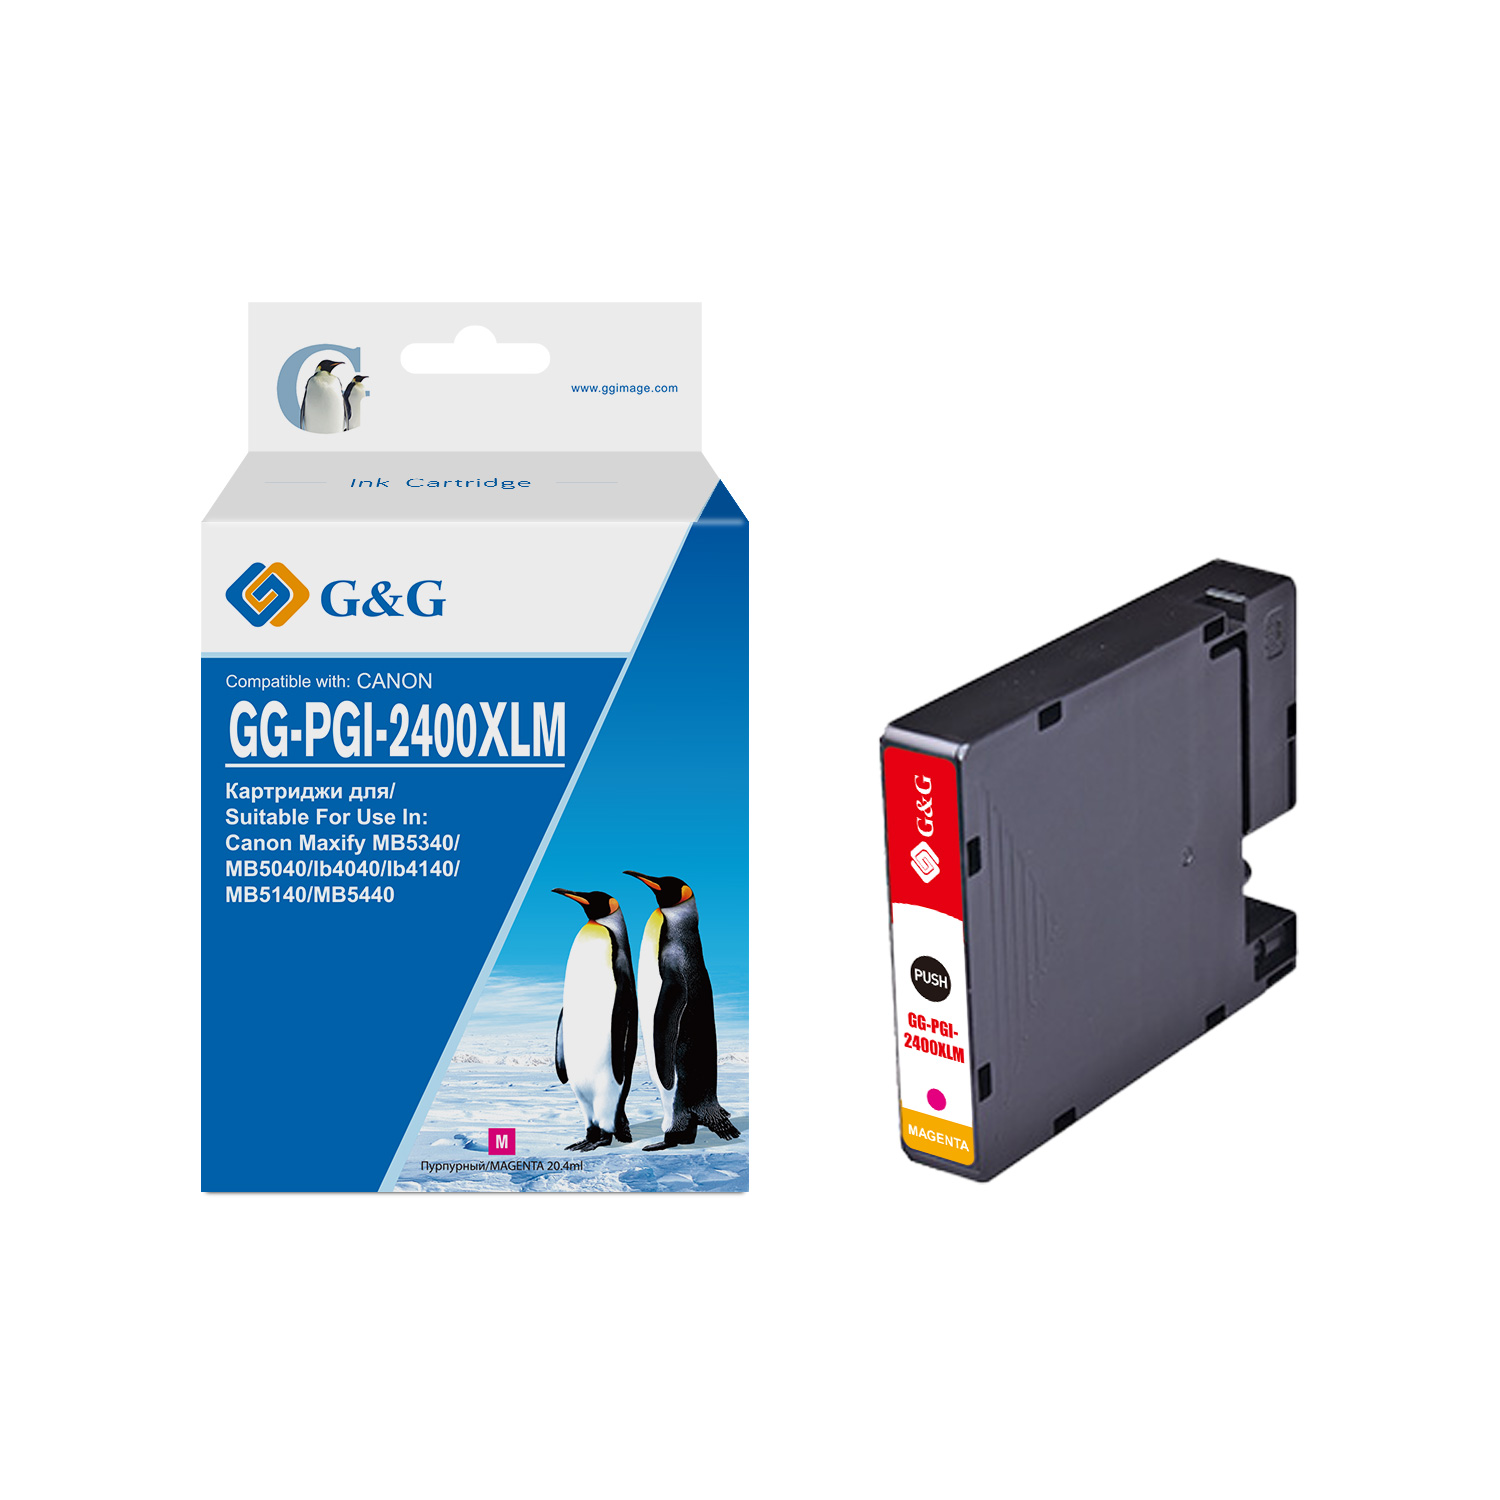 gg-pgi-2400xlm_0